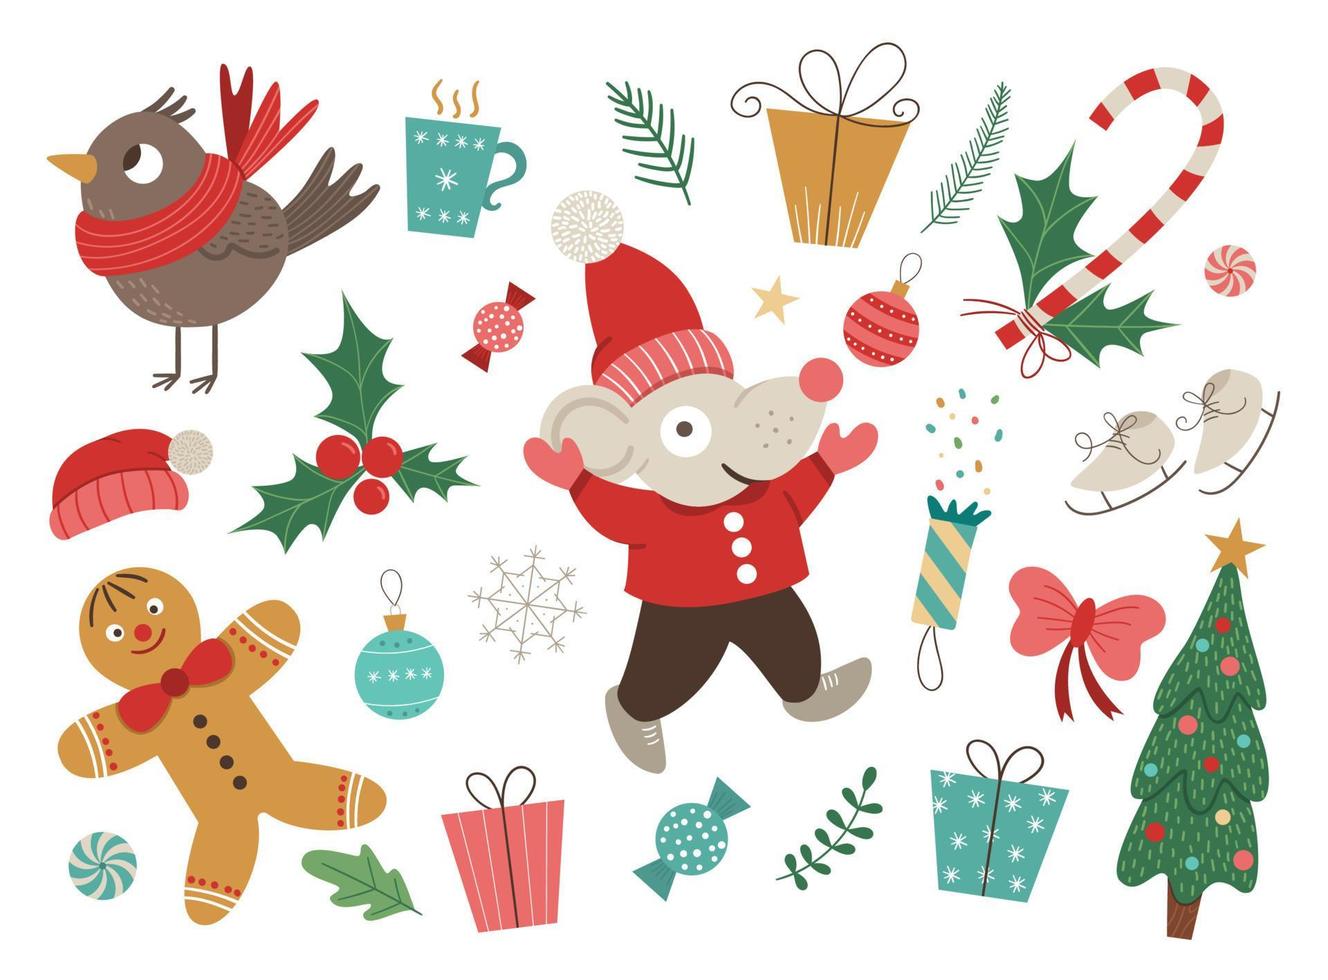 Vektor-Set von Weihnachtselementen mit Maus in rotem Hut und Jacke mit den Händen nach oben isoliert auf weißem Hintergrund. süße lustige Illustration des Symbols für das Jahr 2020. Weihnachtsbild im flachen Stil für das neue Jahr vektor